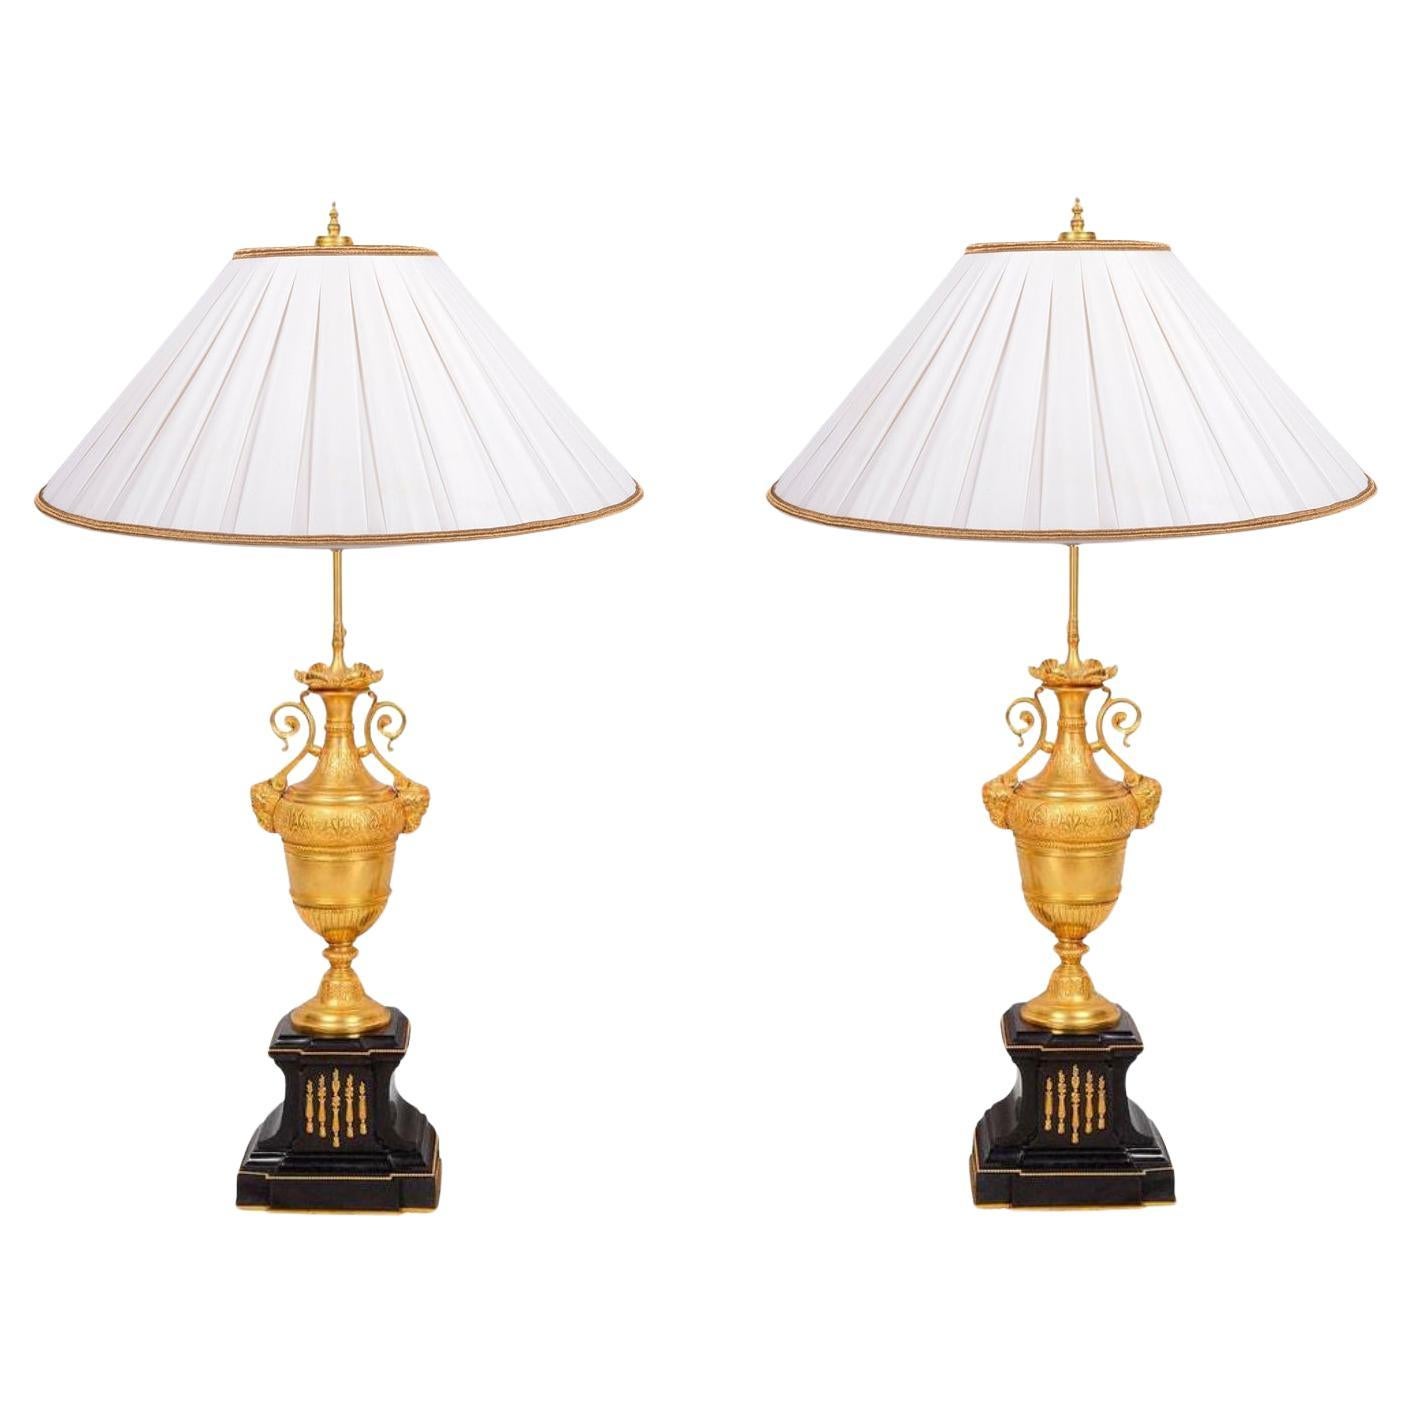 Paire de lampes classiques dorées du XIXe siècle